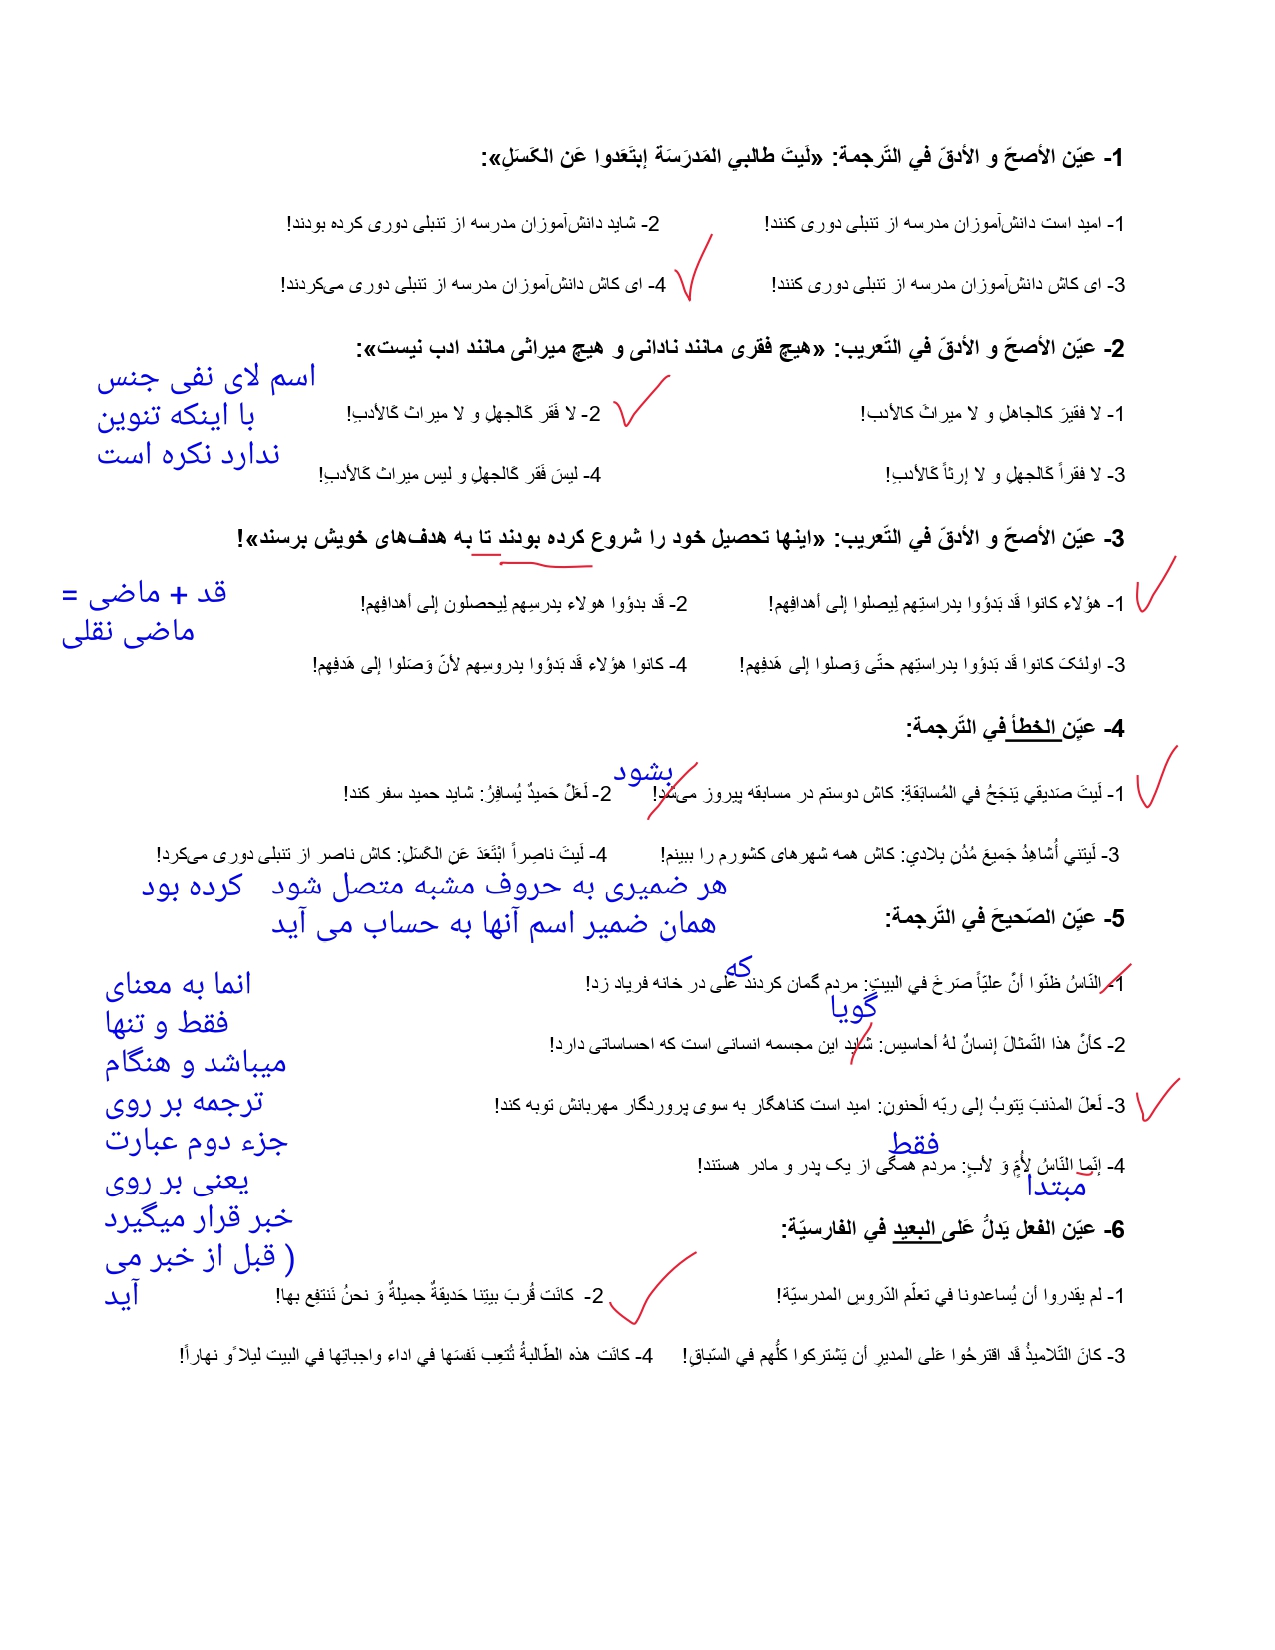 نمونه سوال عربی حروف مشبهه + جواب 1